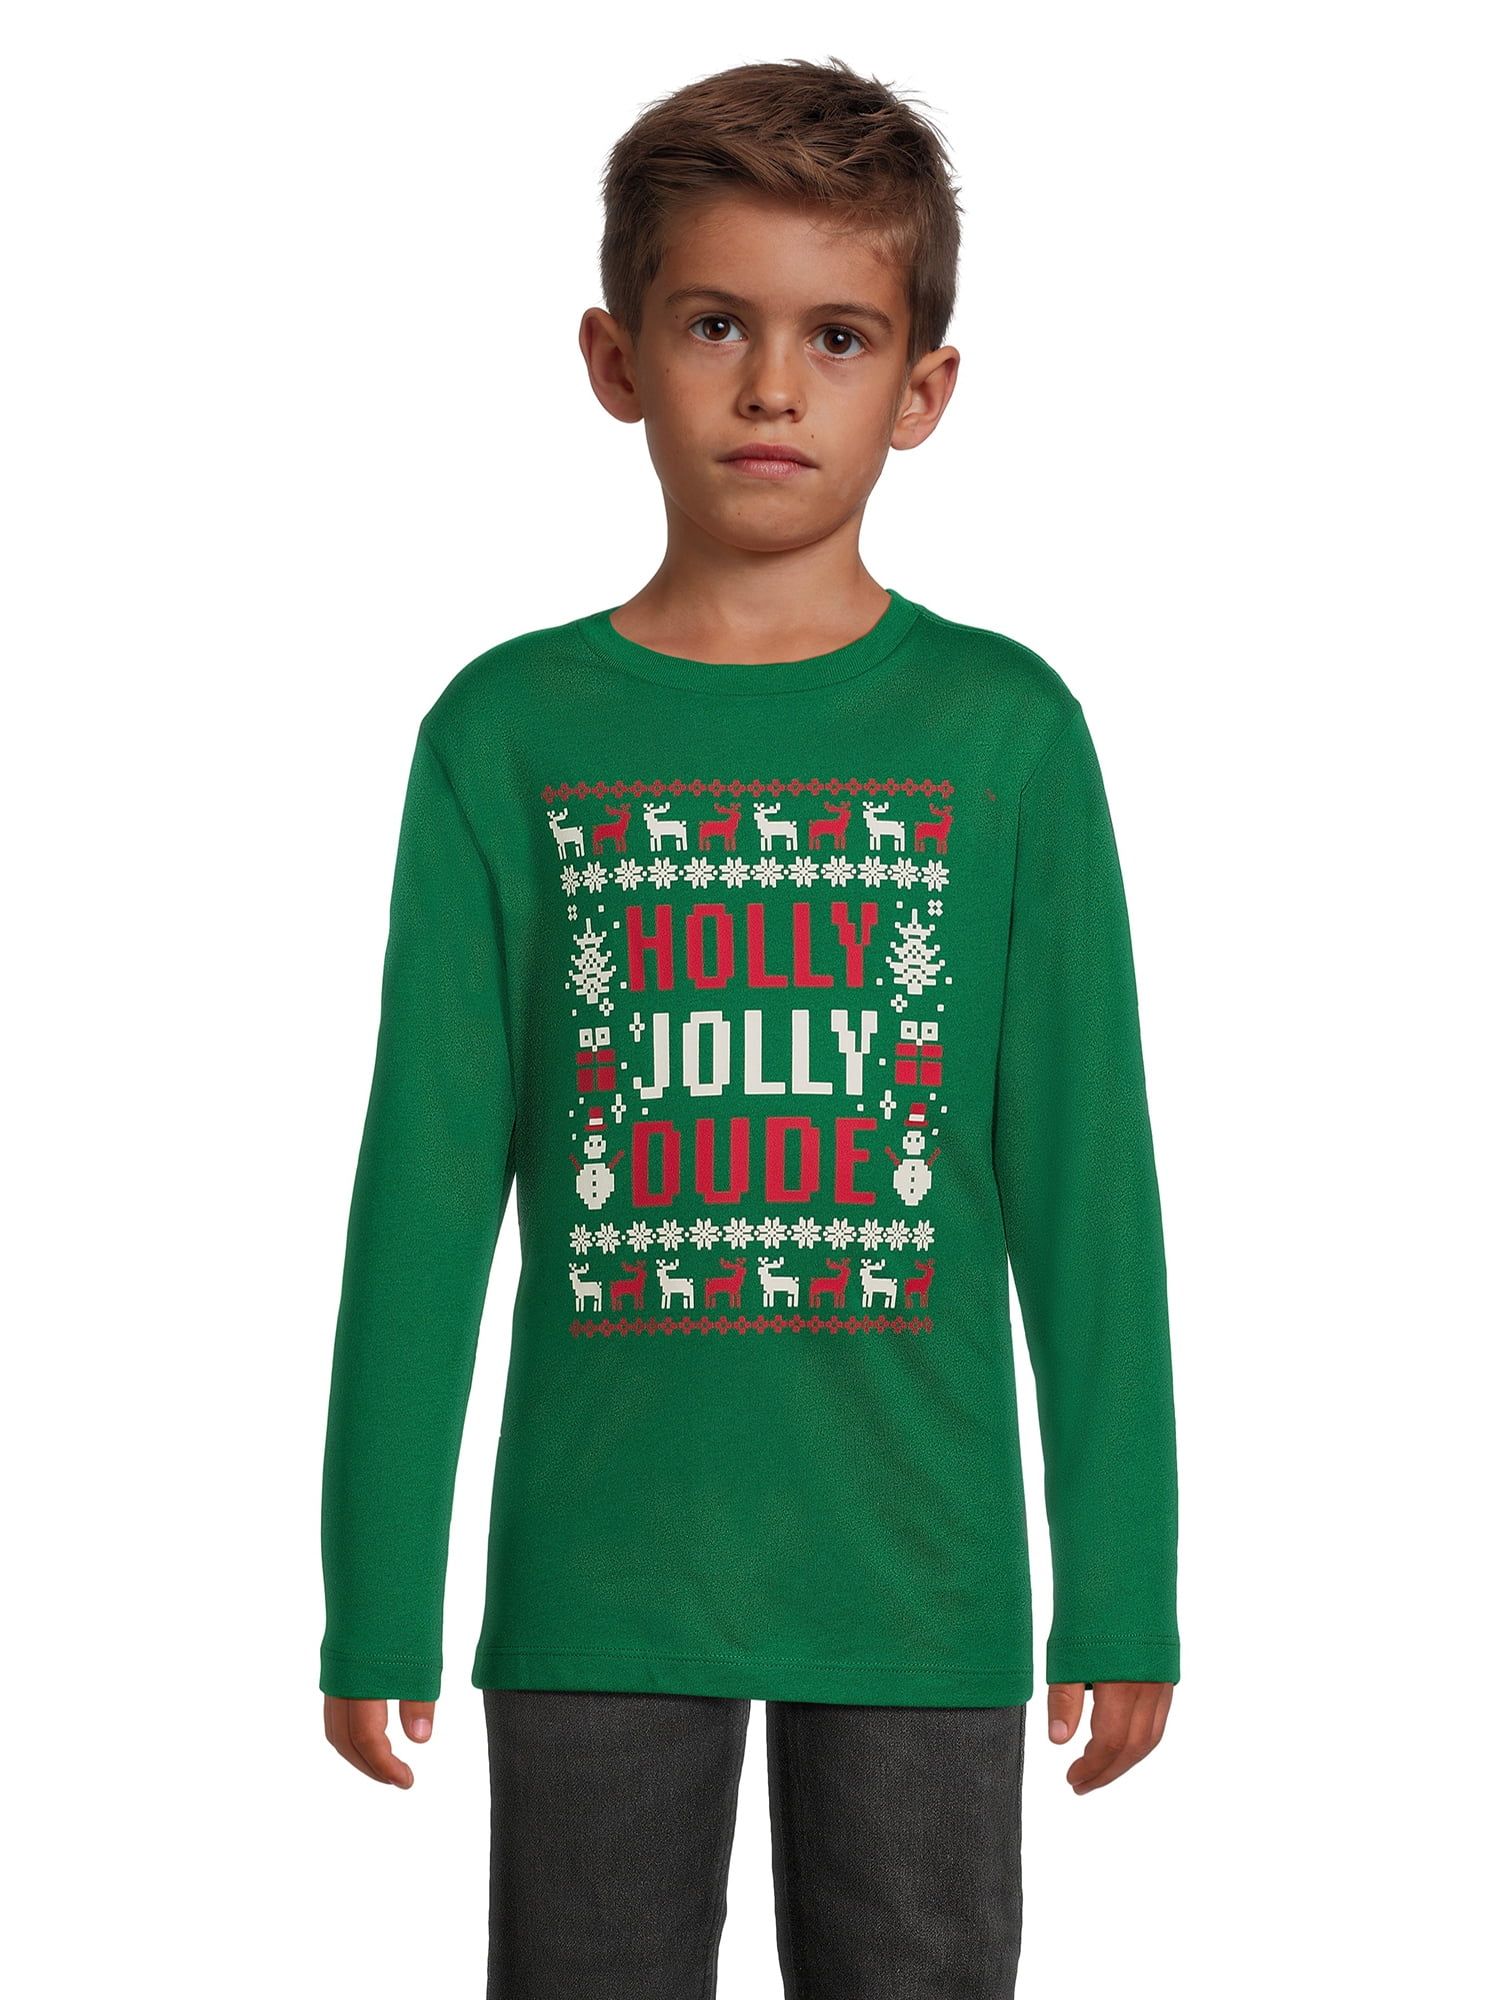 Holiday Time Boys Long Sleeve Christmas Graphic Tee Shirt, Sizes 4-18 & Husky | Walmart (US)